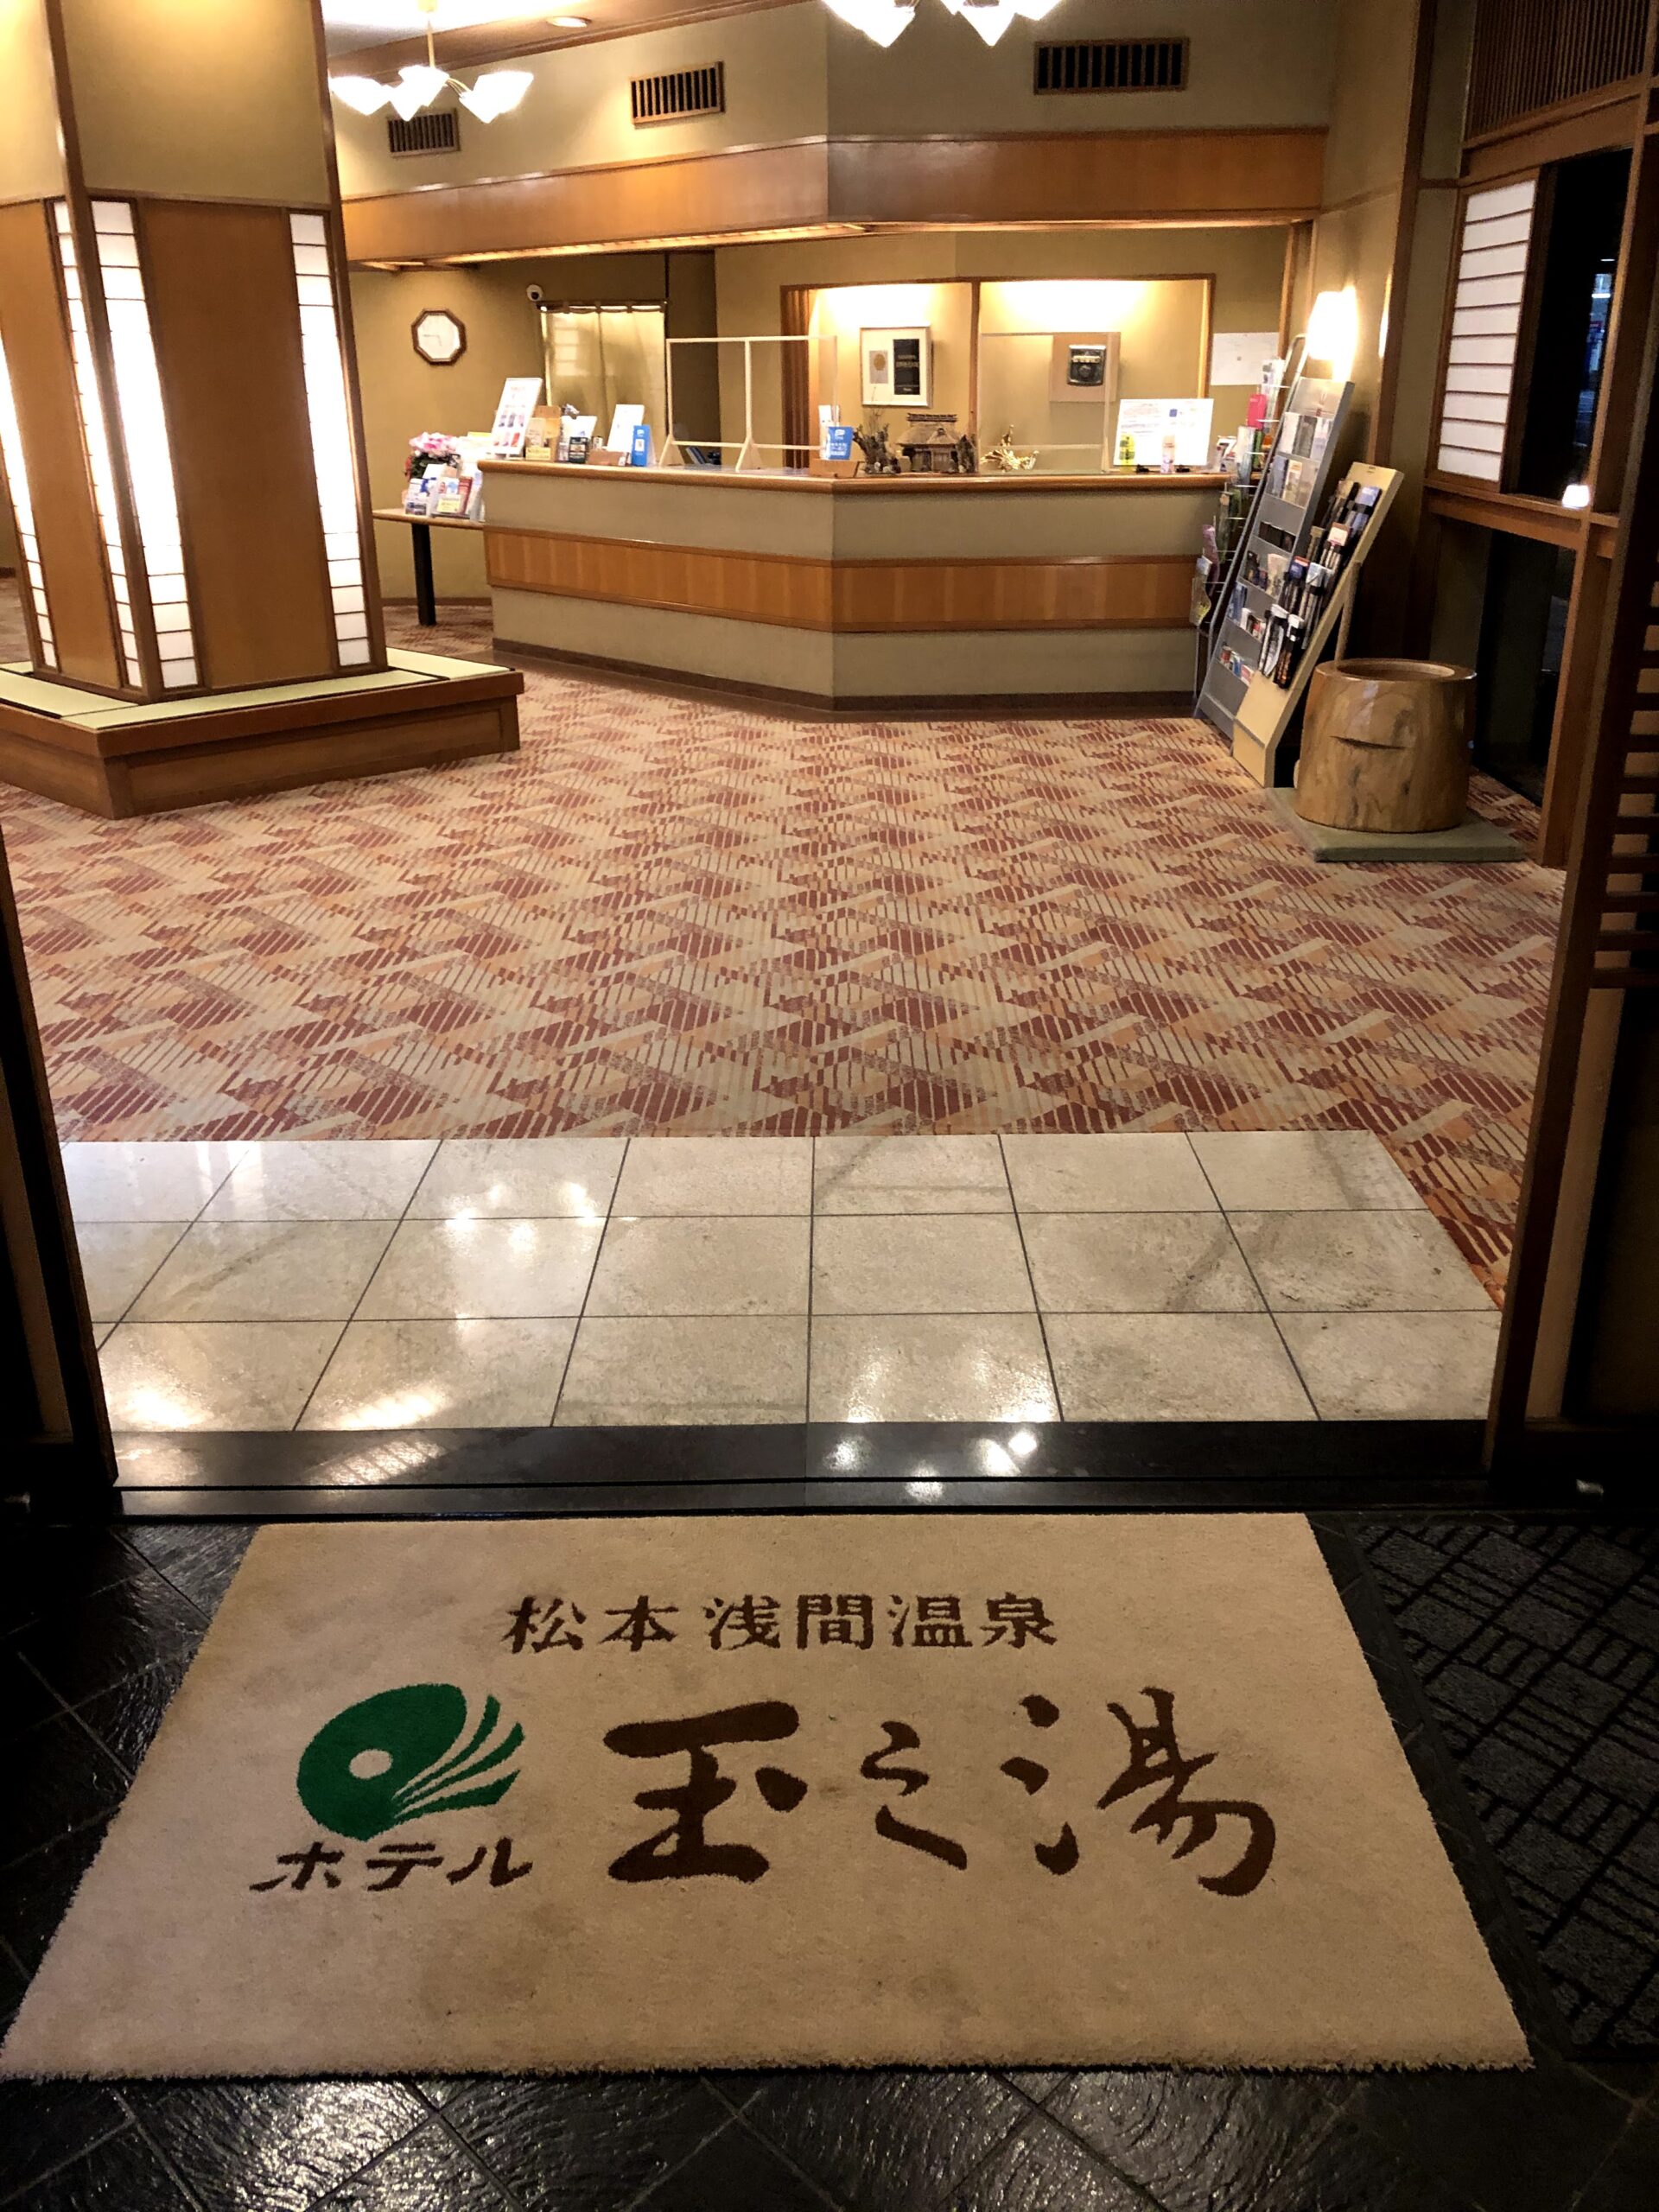 桜こみちハートフルトラベルで行く浅間温泉ホテル玉乃湯